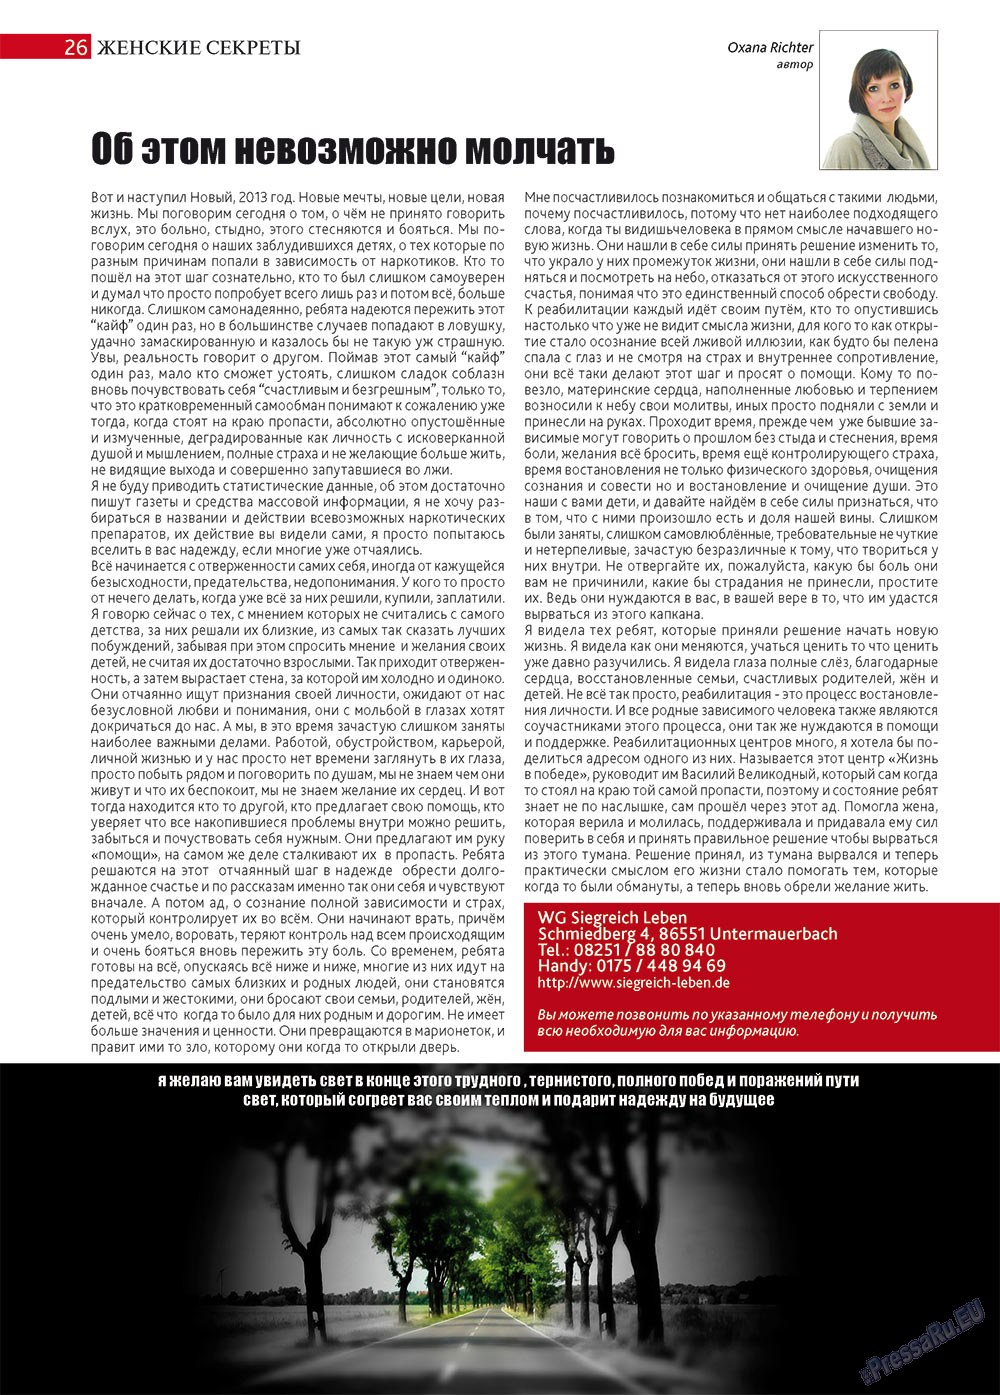 Афиша Augsburg (журнал). 2013 год, номер 1, стр. 26